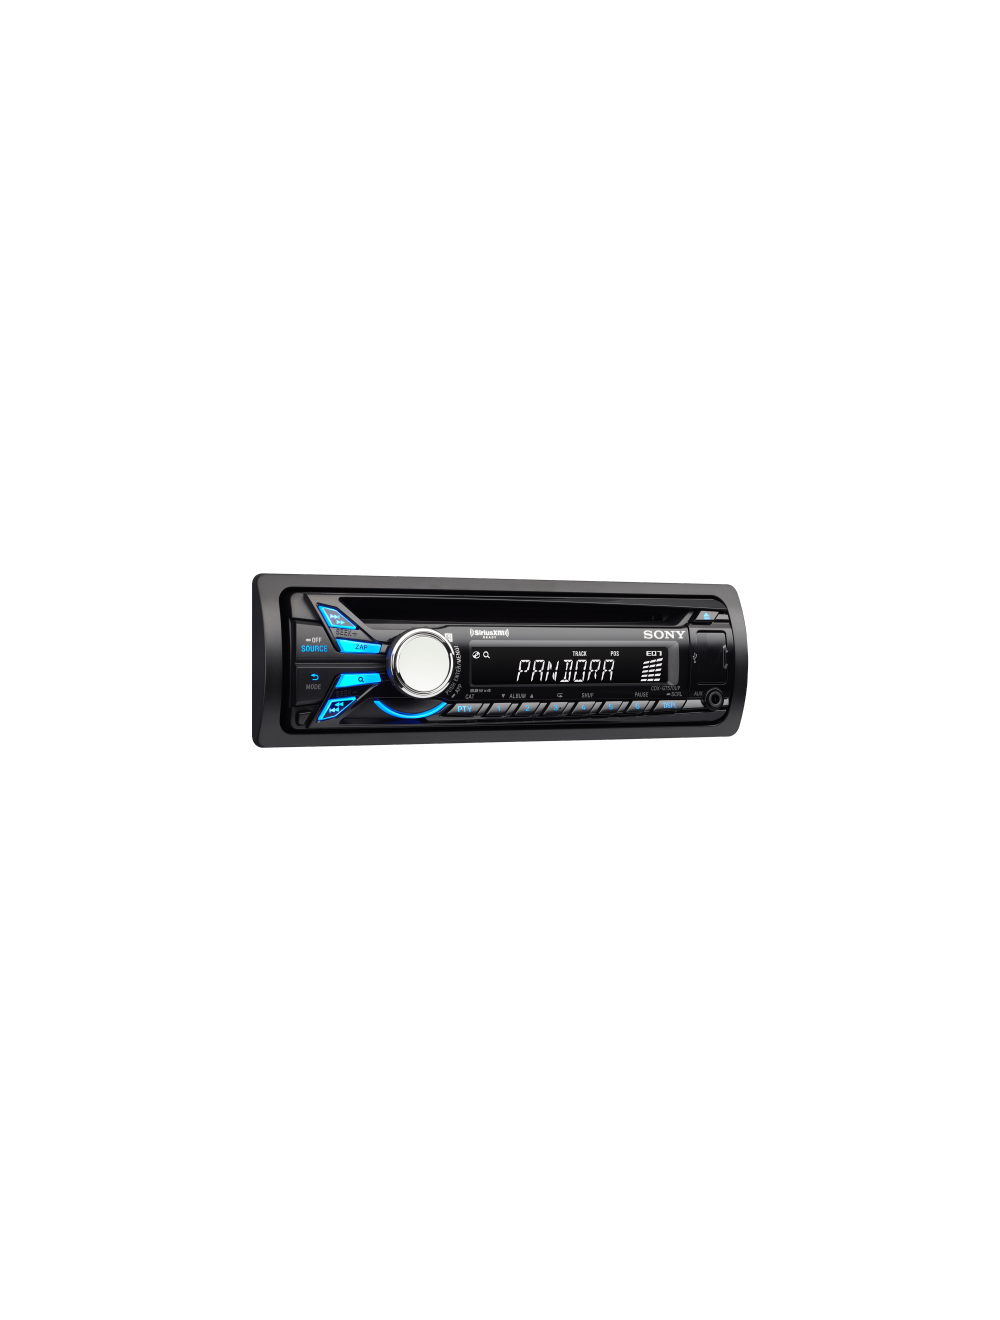 Sony CDX-GT570UP CD/USB Receiver w/Pandora control (CDXGT570UP)